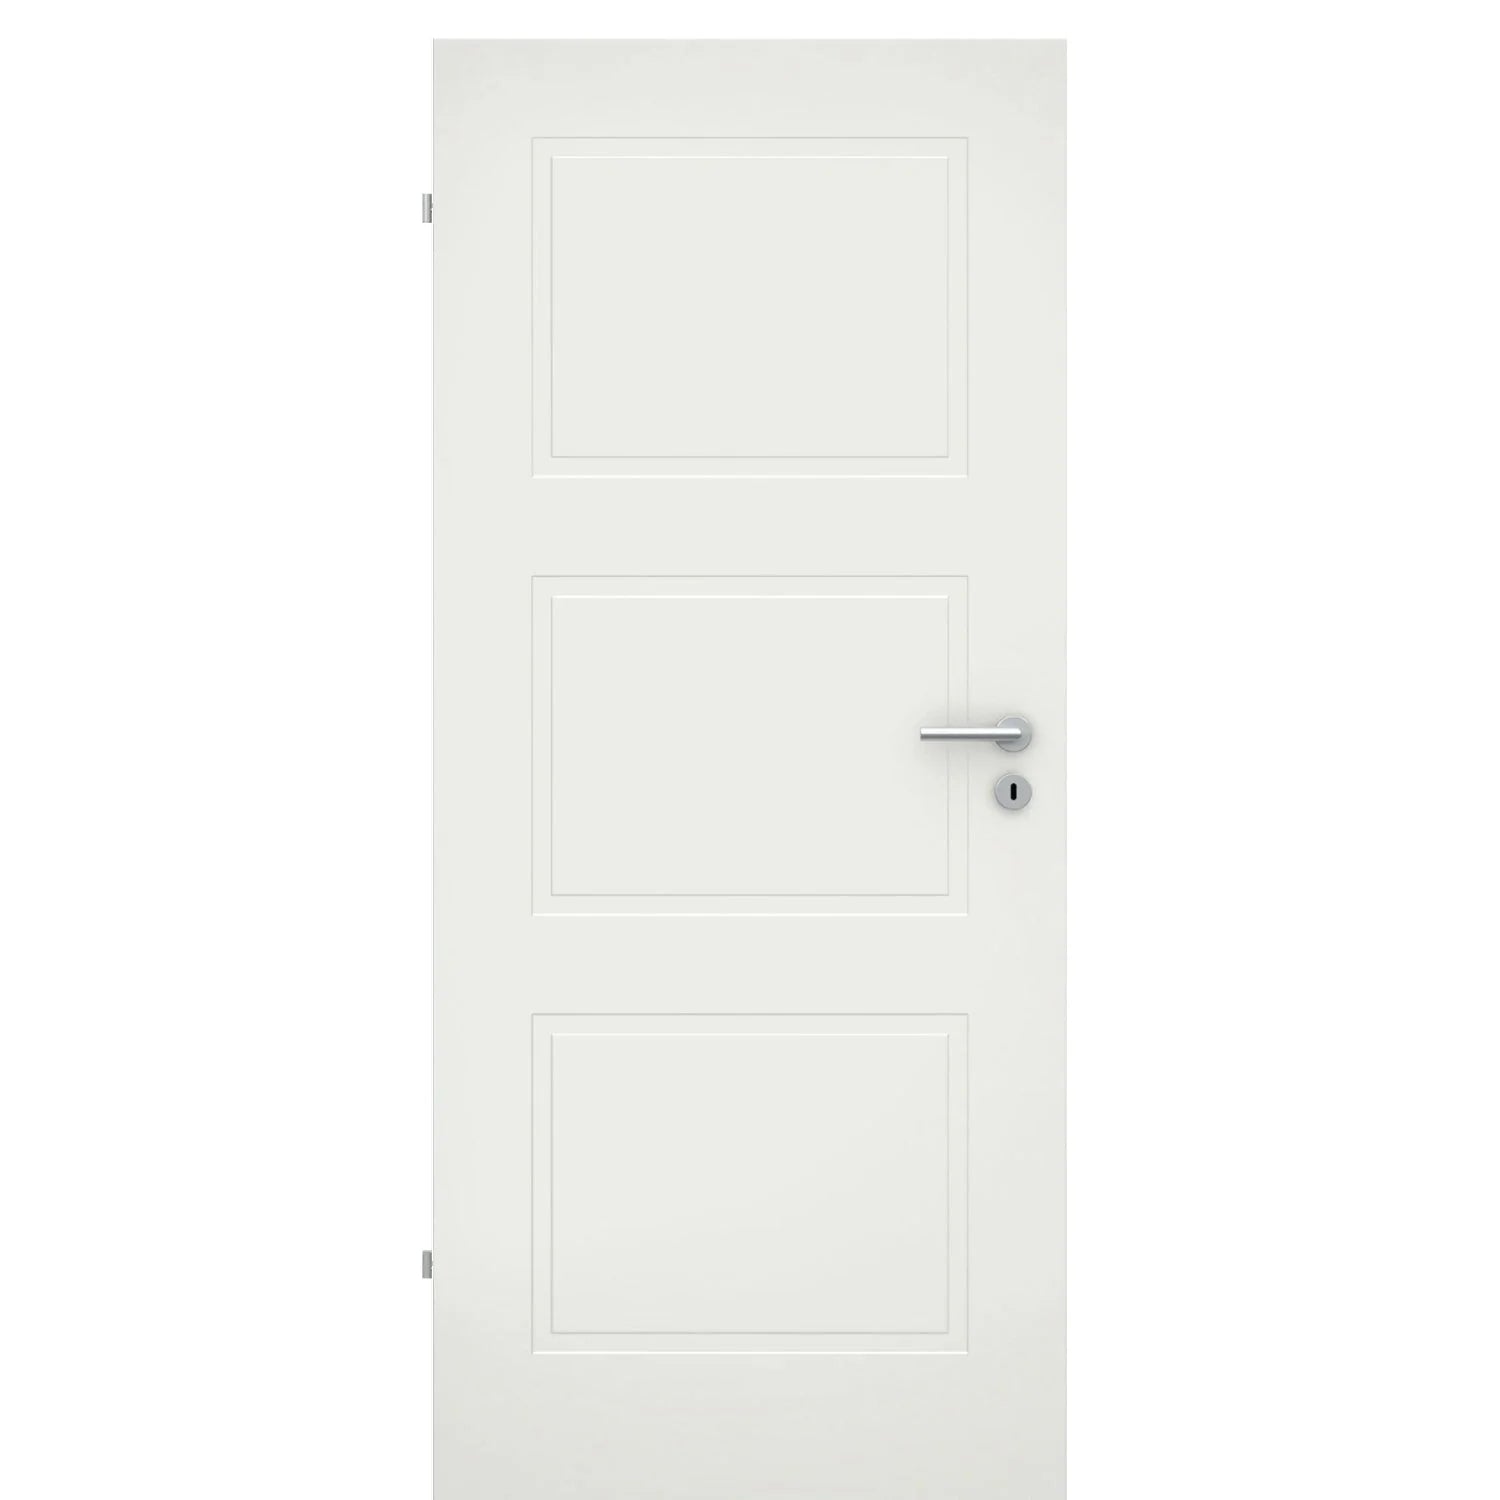 Zimmertür soft-weiß 3 Kassetten Eckkante - Modell Stiltür M31